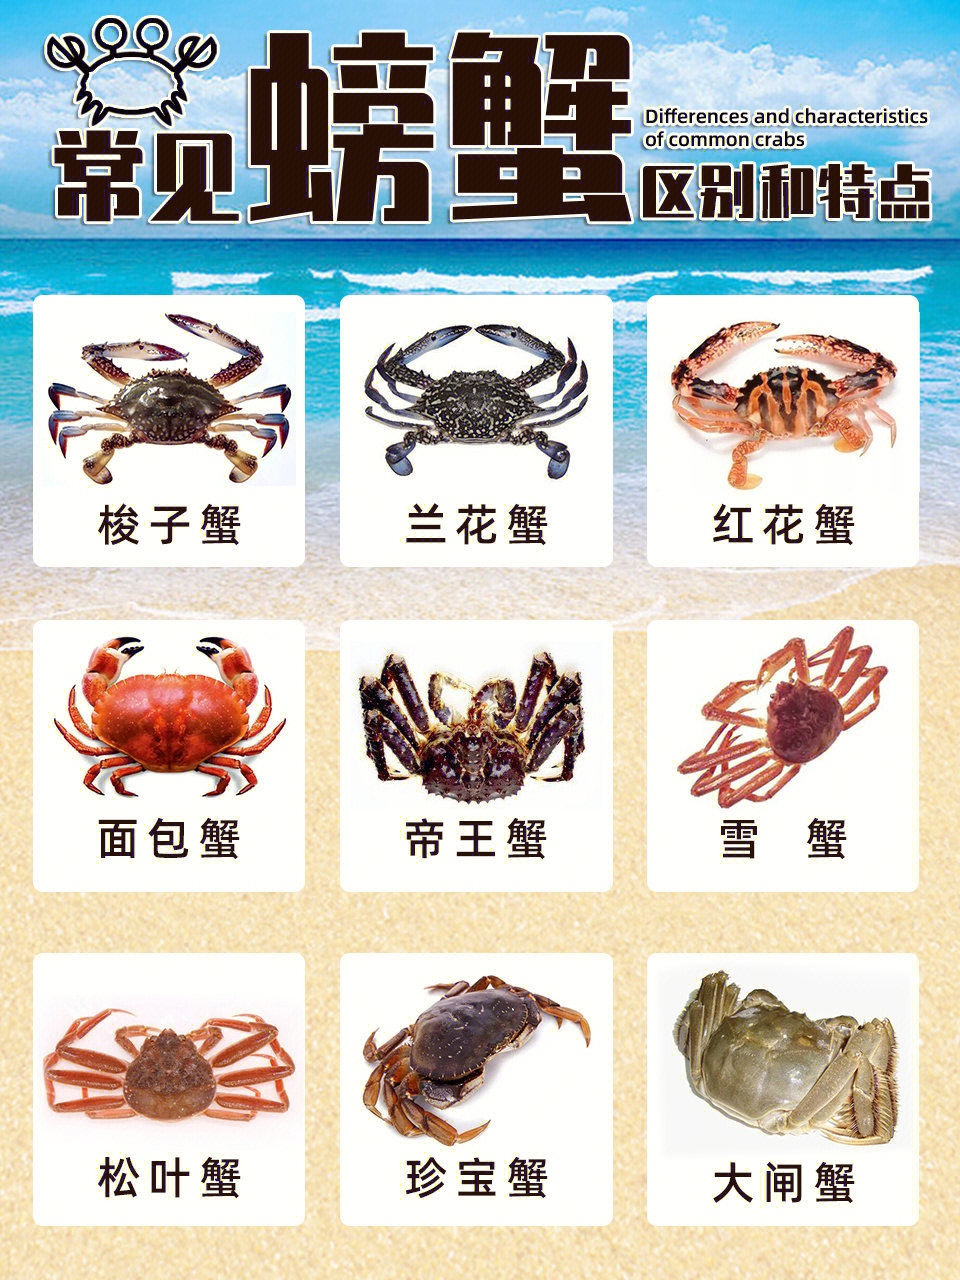 95秋风起,蟹脚痒,秋天正是吃螃蟹的好时节!